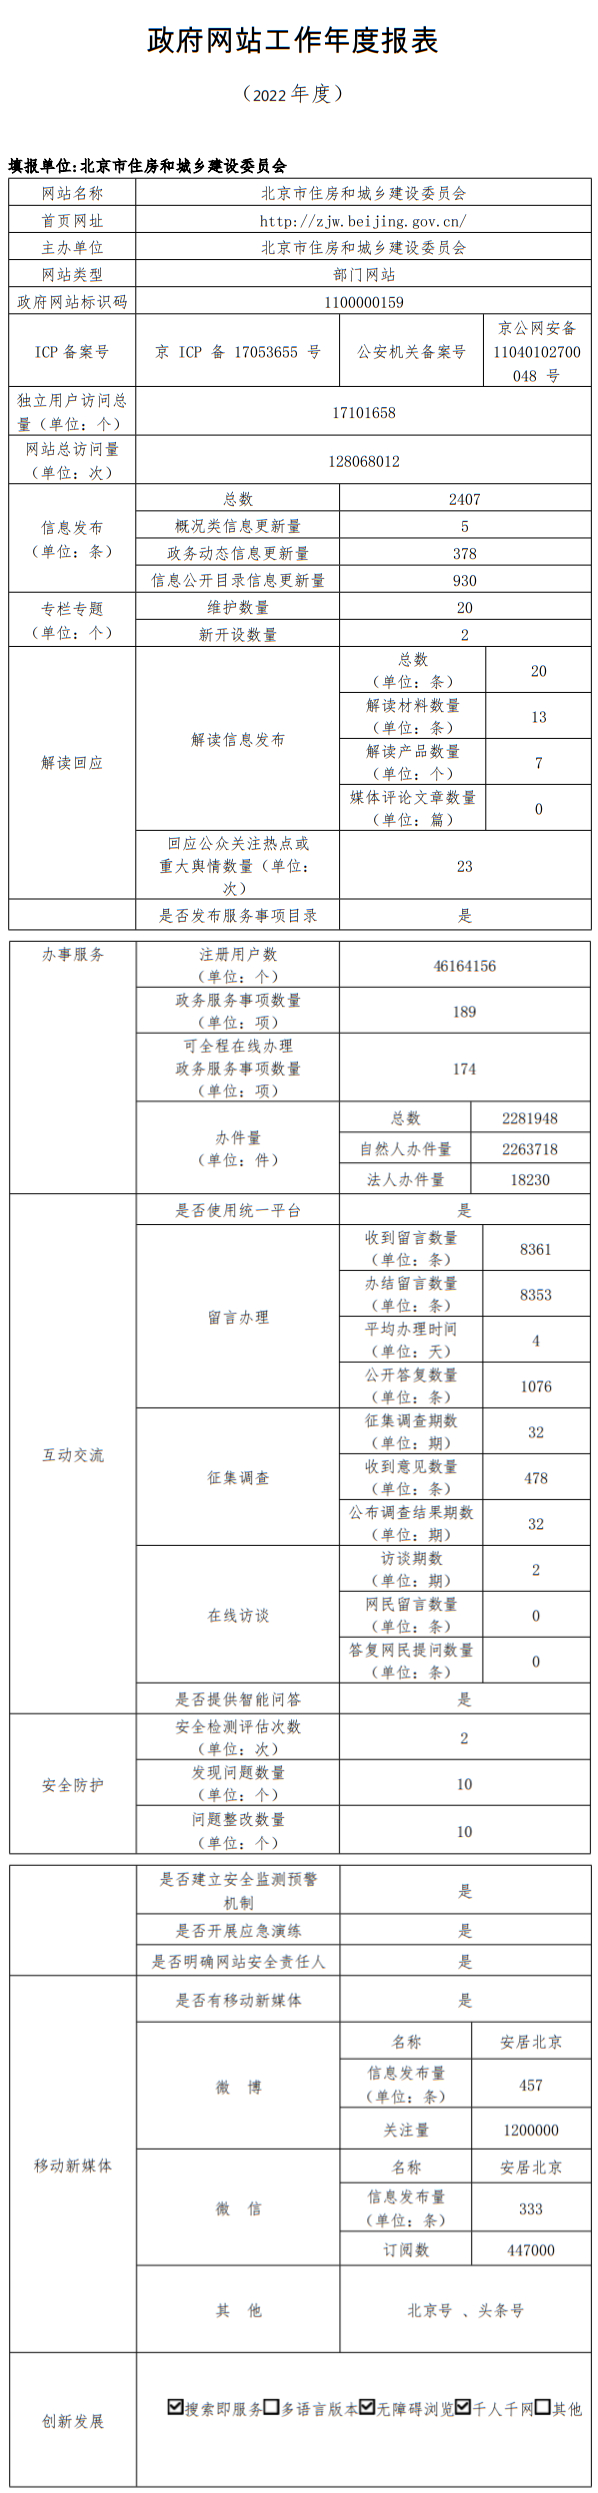 北京市住房和城鄉建設委員會2022年政府網站年度工作報表